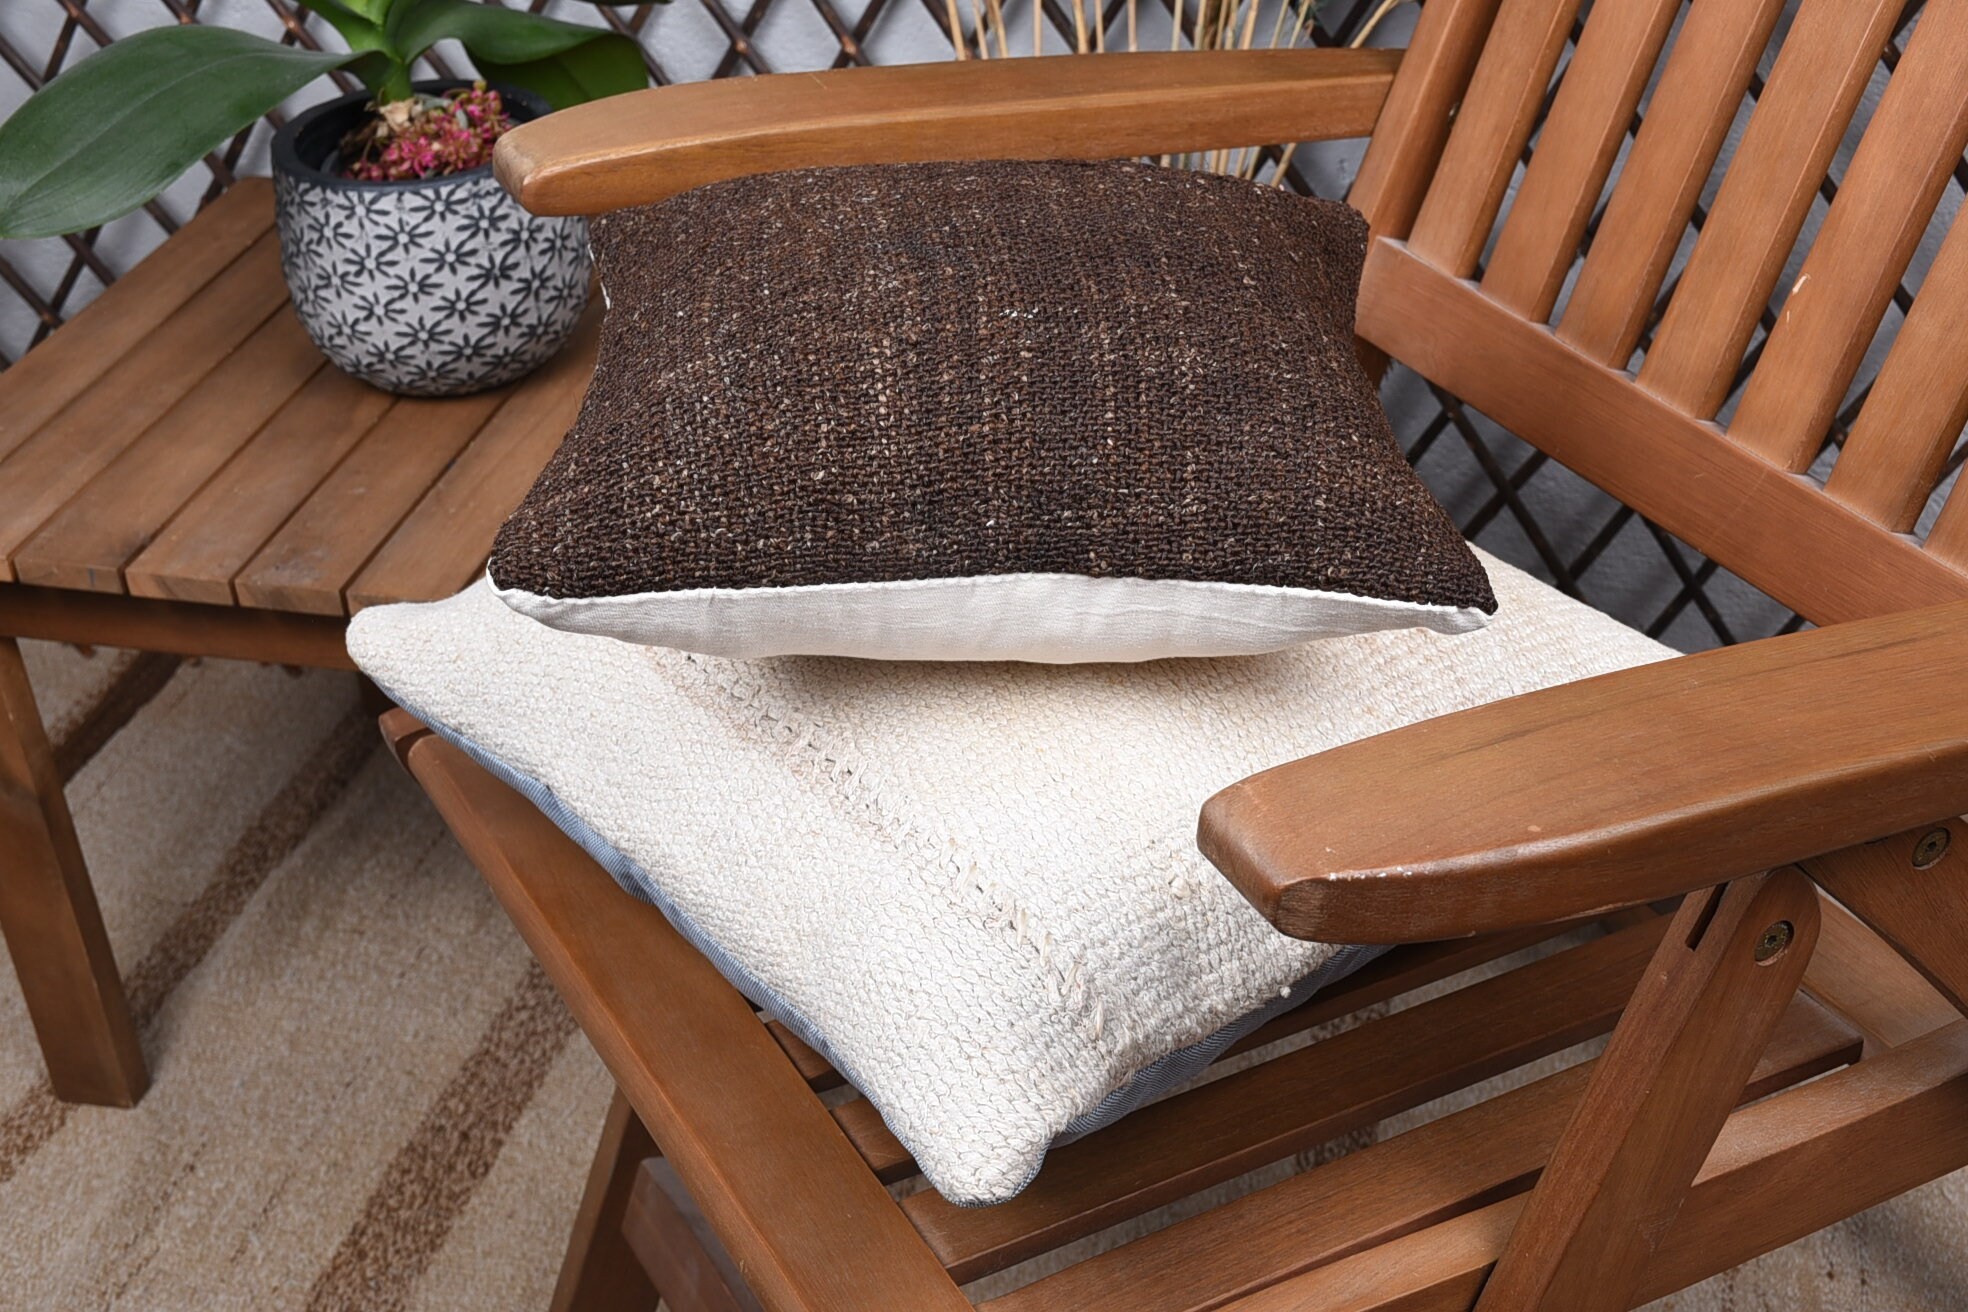 12"x12" Brown Cushion Cover, Cozy Throw Pillow, Kilim Pillow, Antique Pillows, Vintage Kilim Pillow, Decorative Bolster Pillow Sham